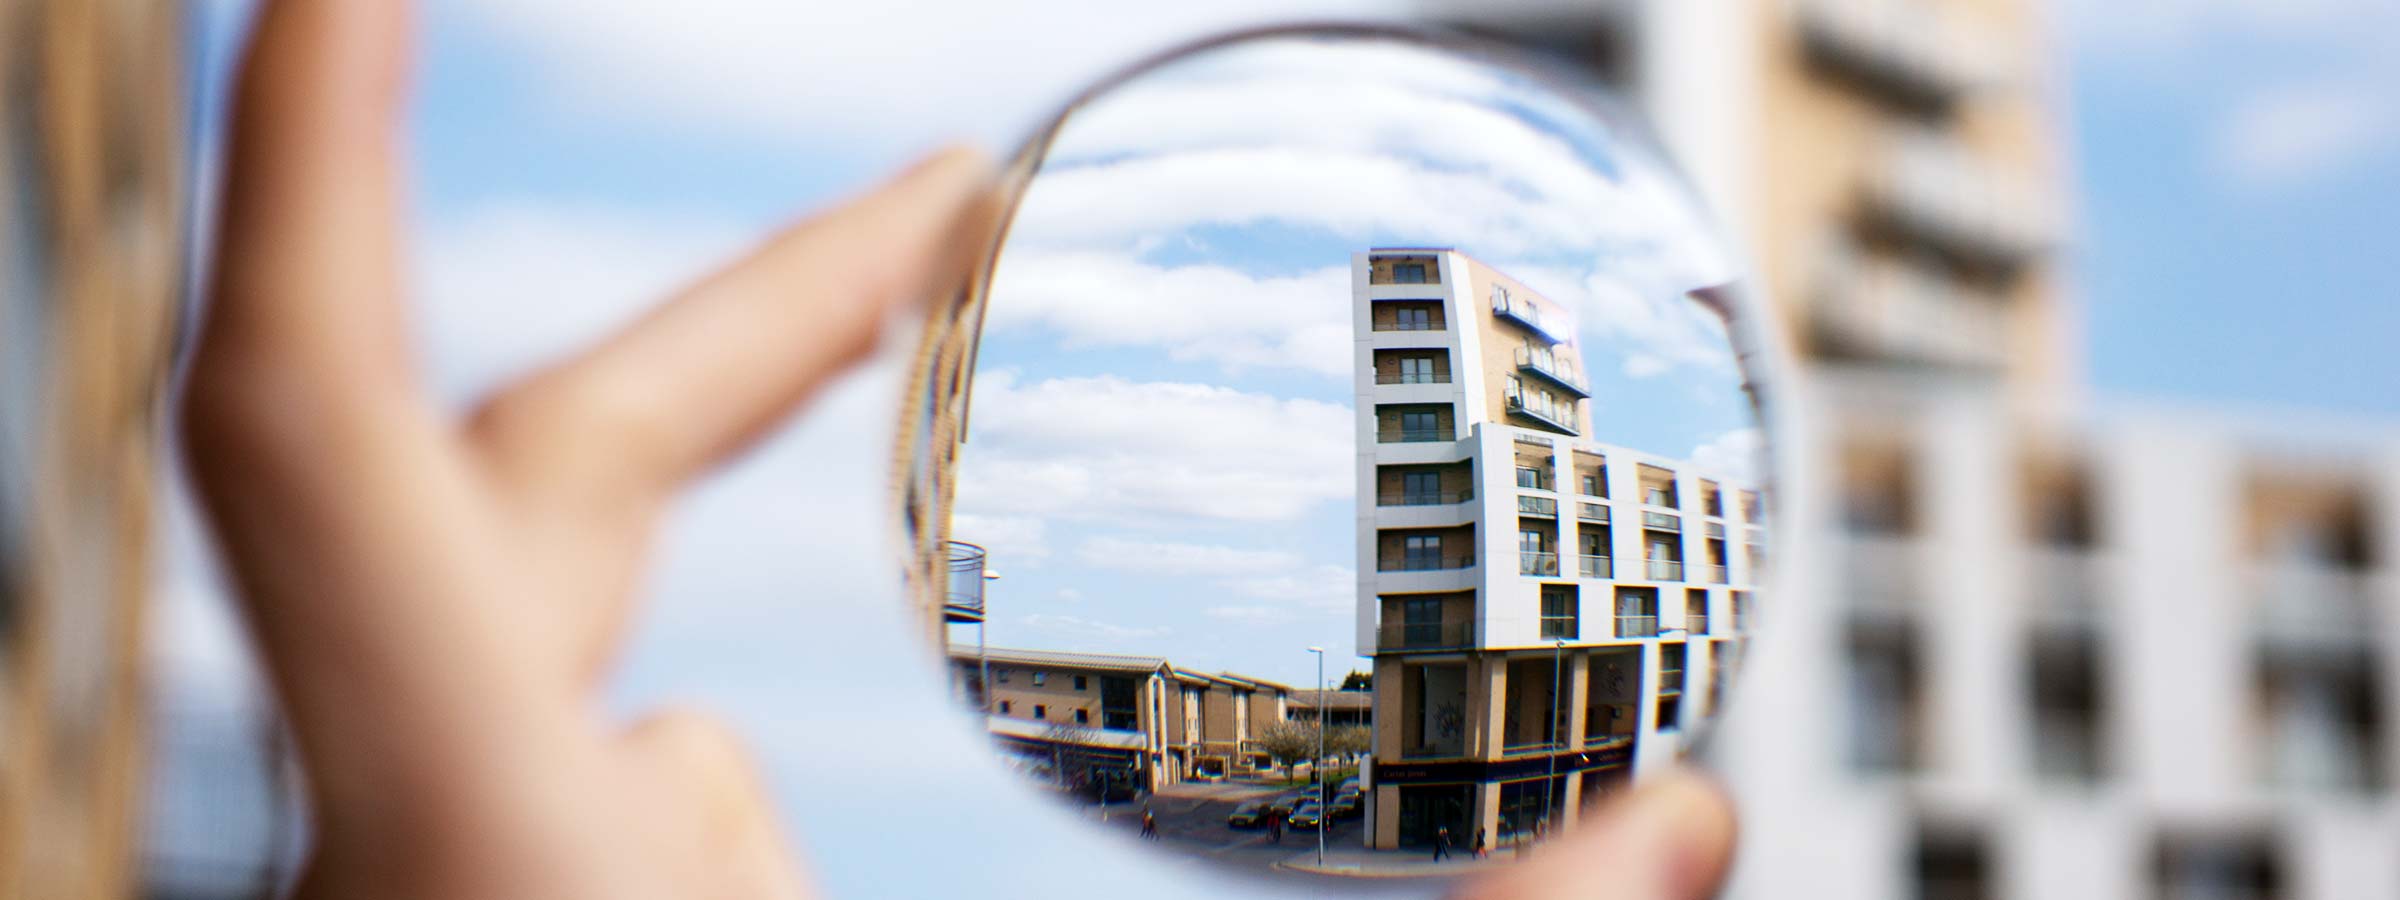 A lens bringing a building into focus